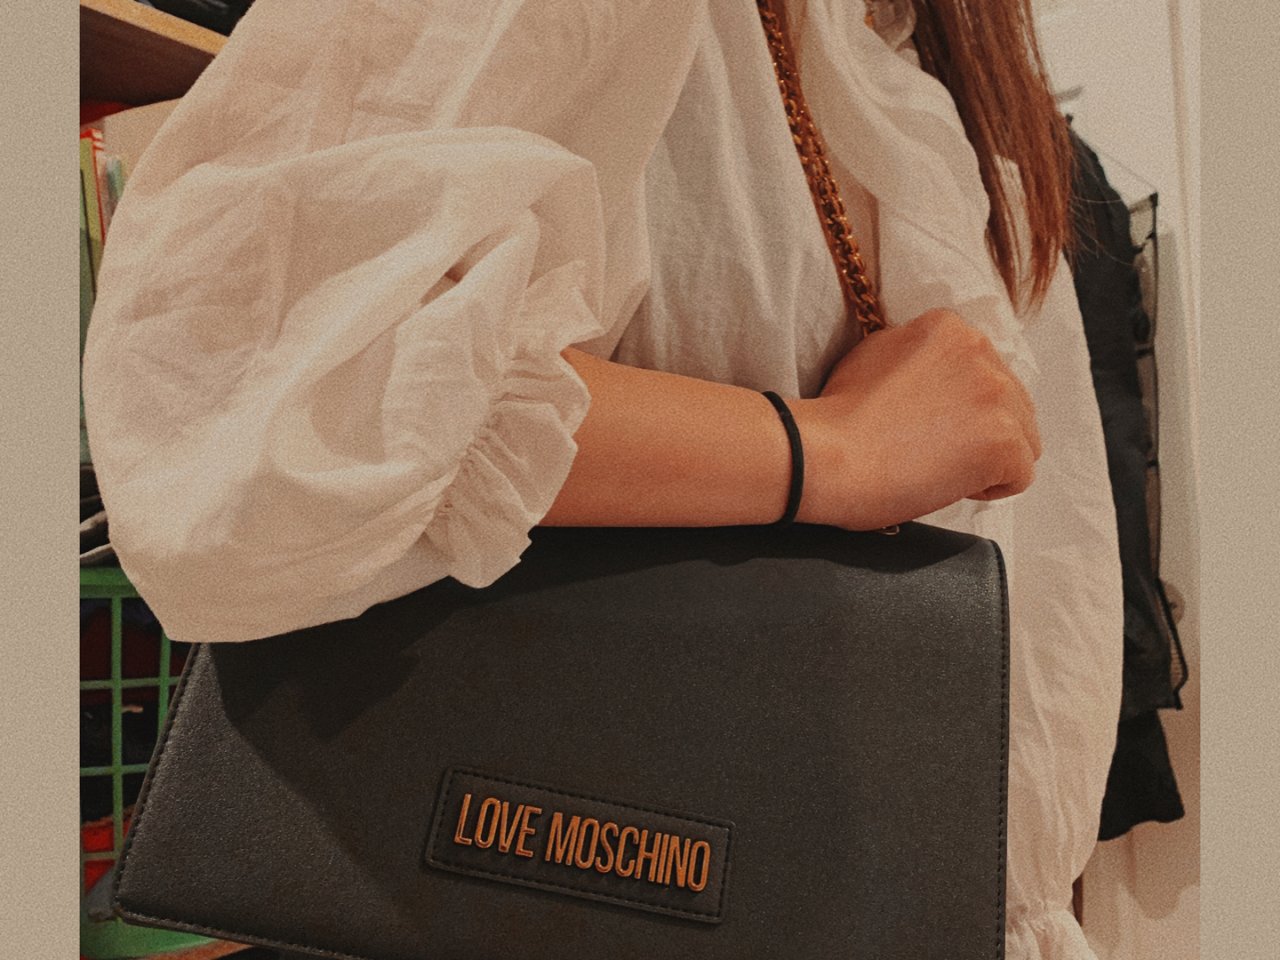 Love Moschino “爱”莫斯奇诺,Zara